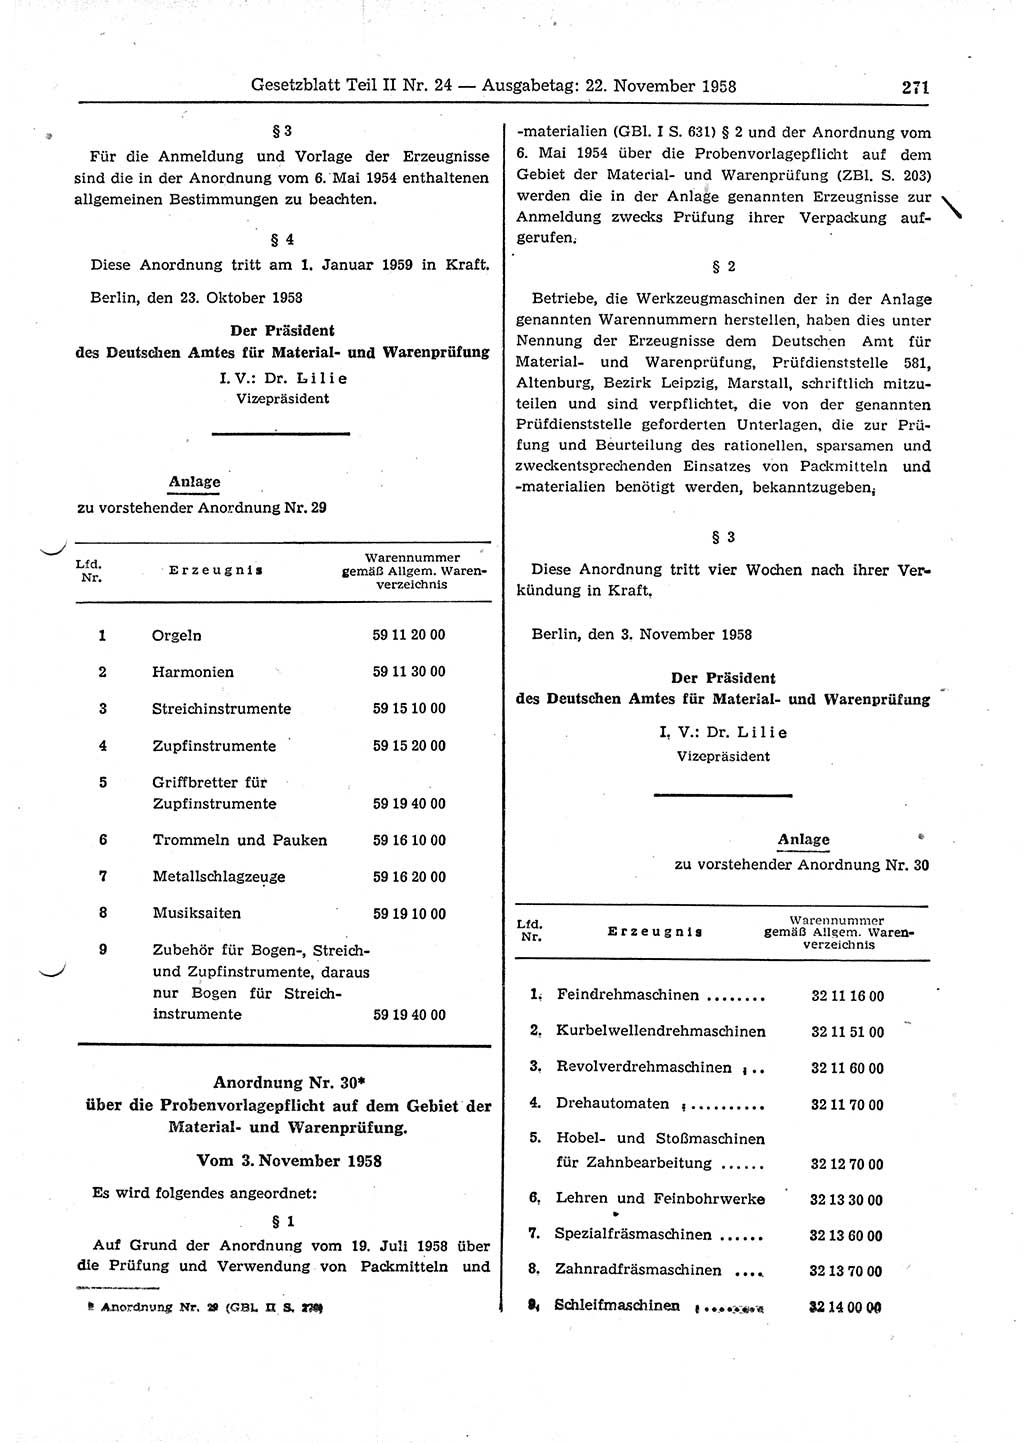 Gesetzblatt (GBl.) der Deutschen Demokratischen Republik (DDR) Teil ⅠⅠ 1958, Seite 271 (GBl. DDR ⅠⅠ 1958, S. 271)